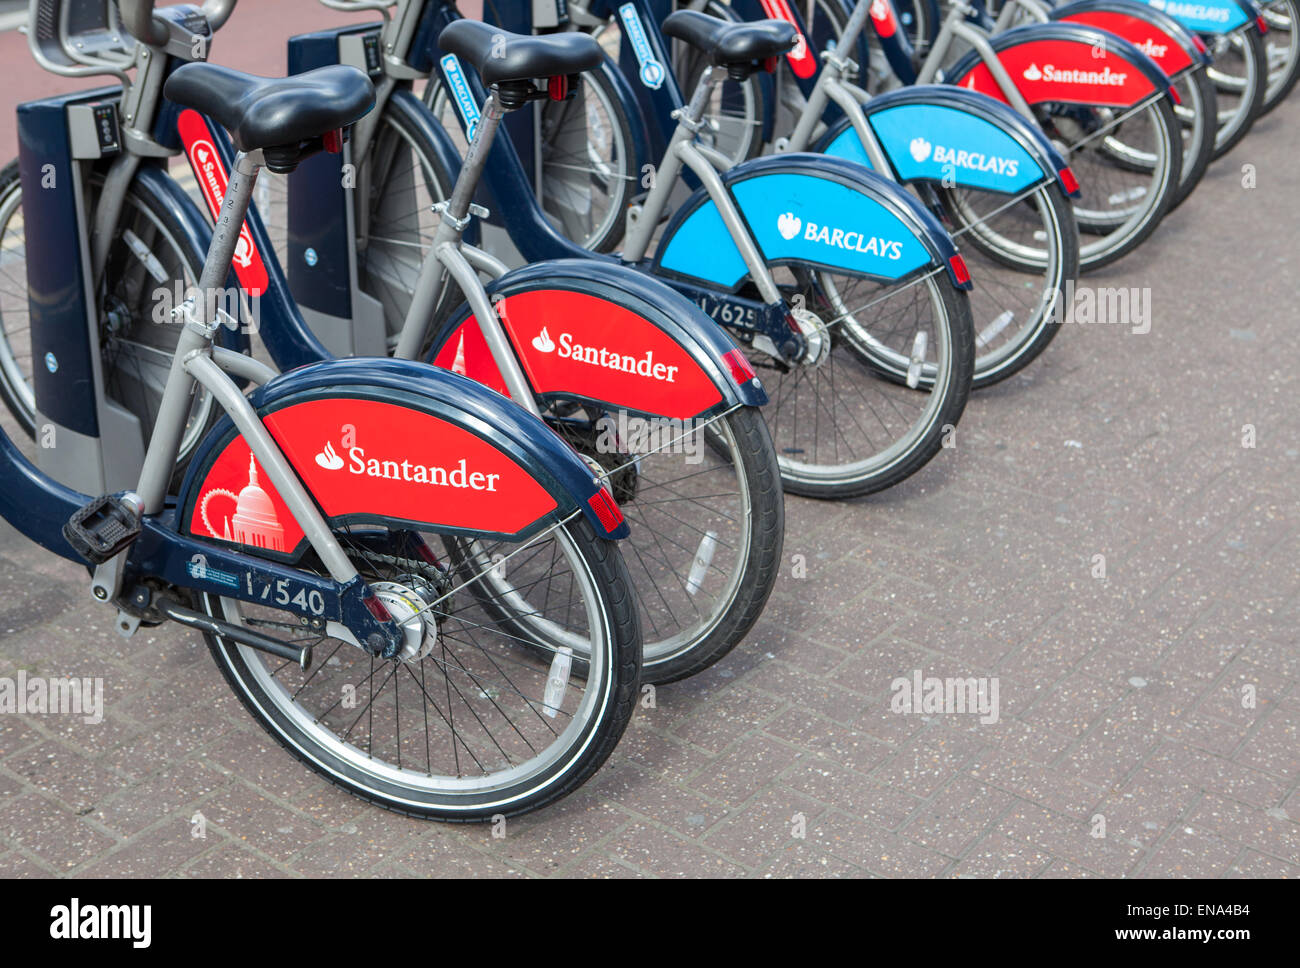 Fahrradverleih-docking-Station mit neuen Bikes von Santander gesponsert, die Barclays als Hauptsponsor ersetzen. Stockfoto